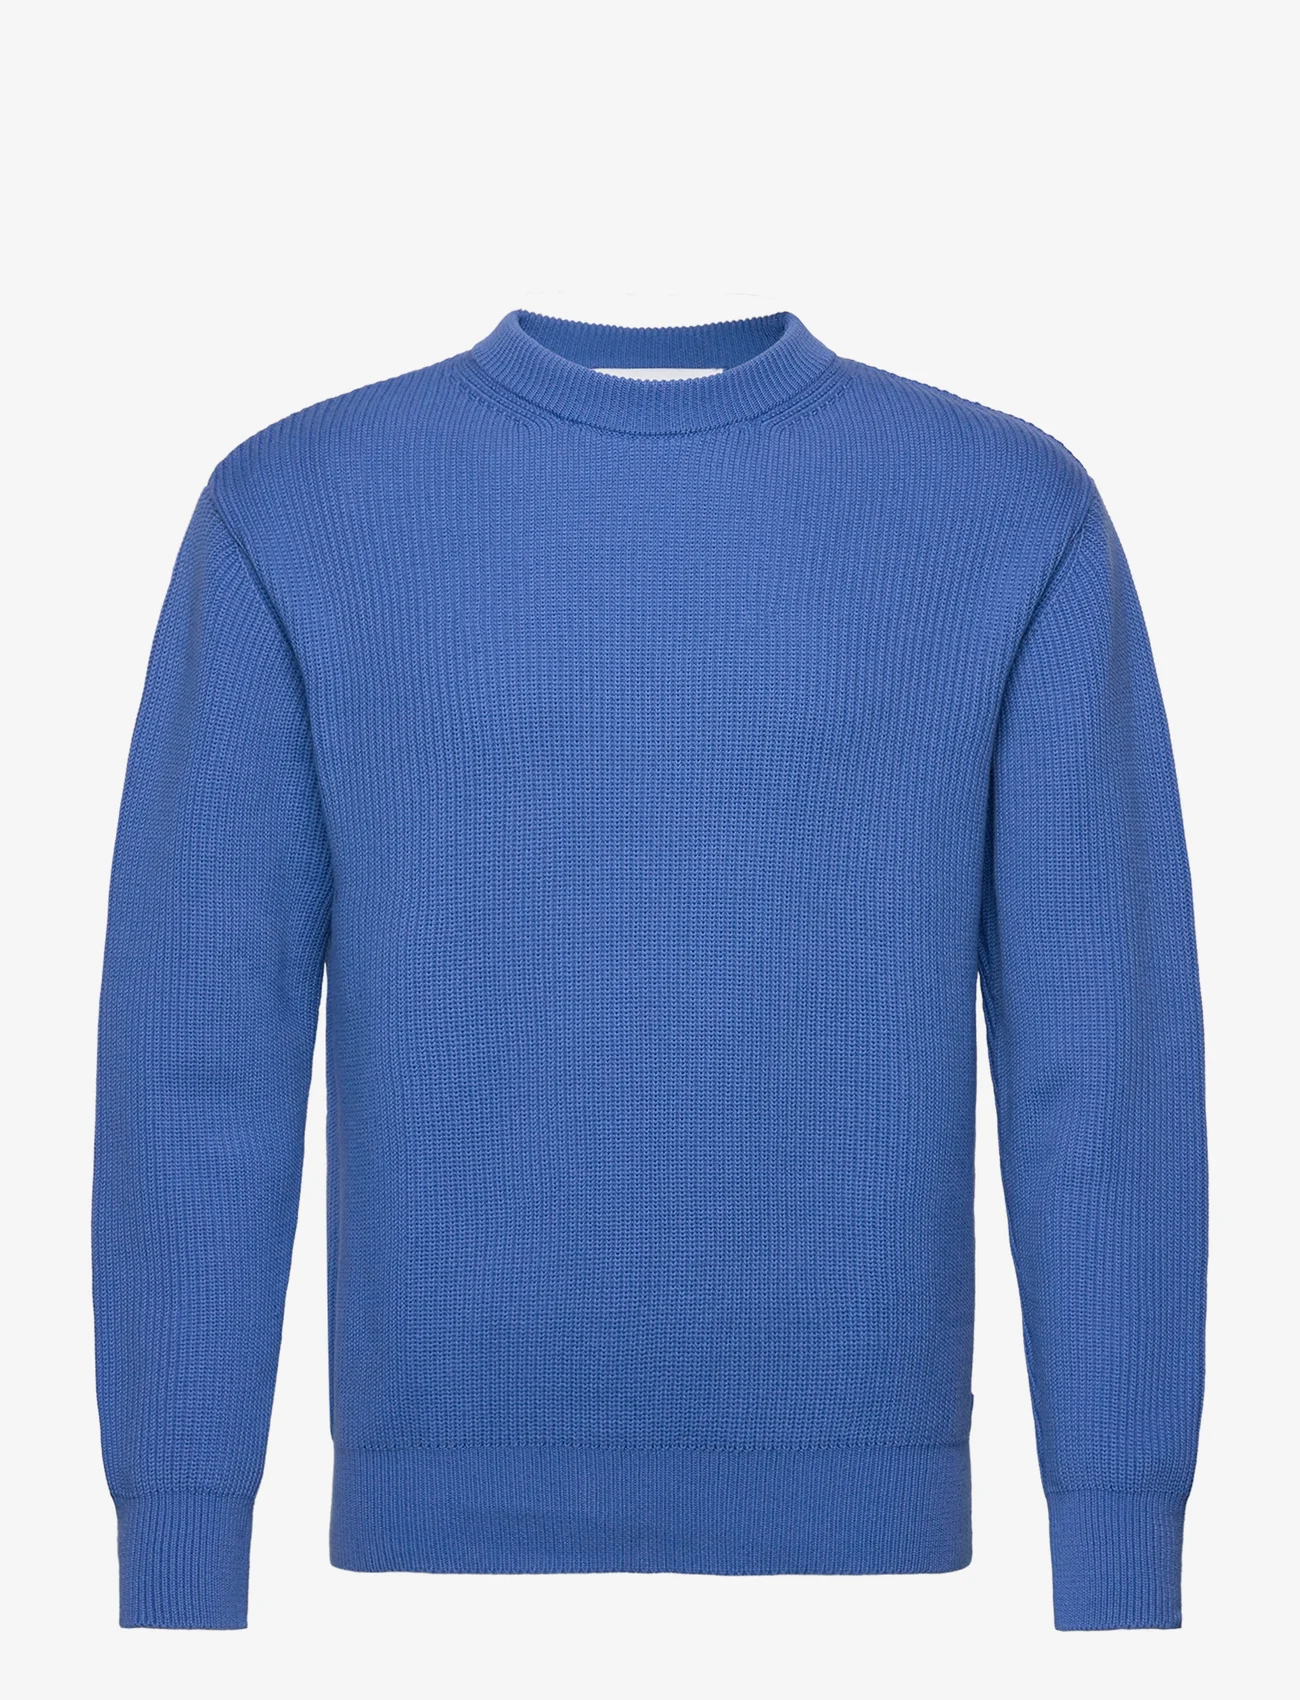 Garment Project - Round Neck Knit - Blue - rundhals - blue - 0